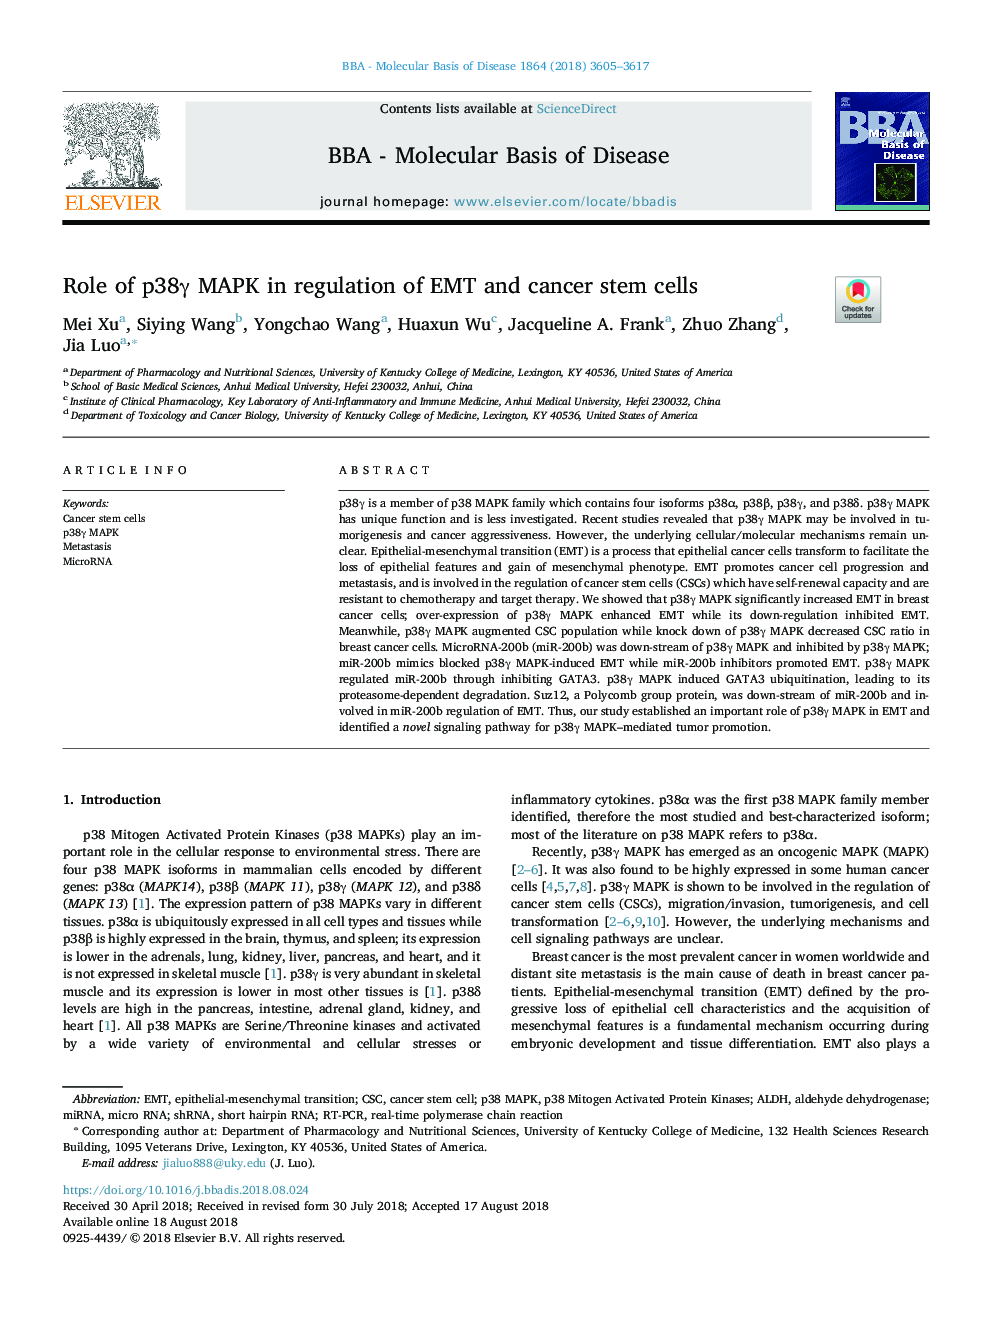 Role of p38Î³ MAPK in regulation of EMT and cancer stem cells